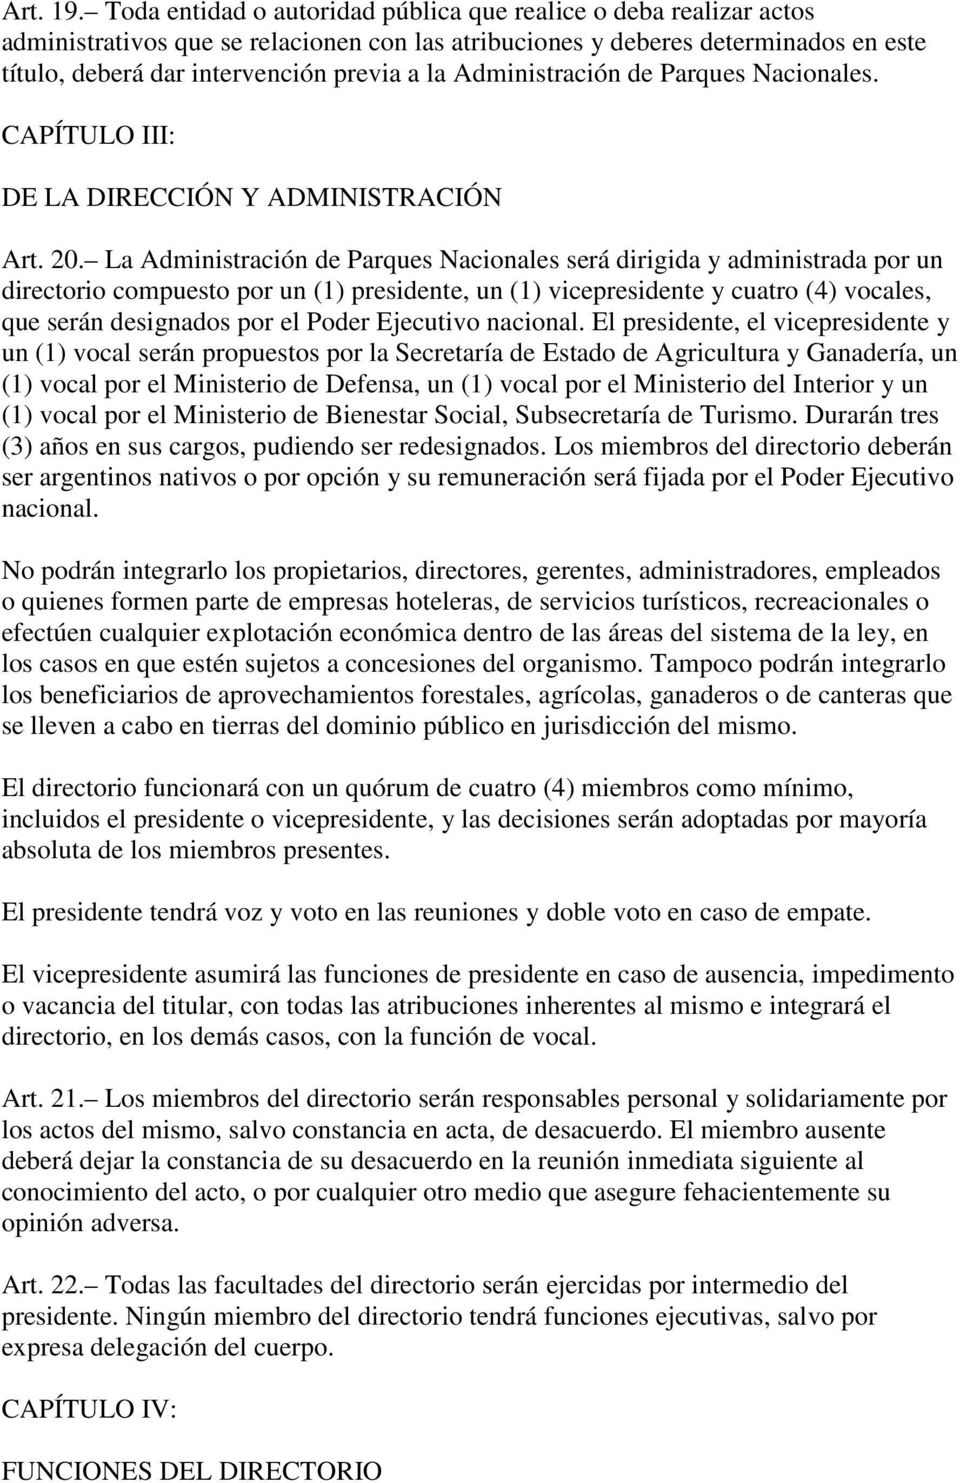 Administración de Parques Nacionales. CAPÍTULO III: DE LA DIRECCIÓN Y ADMINISTRACIÓN Art. 20.